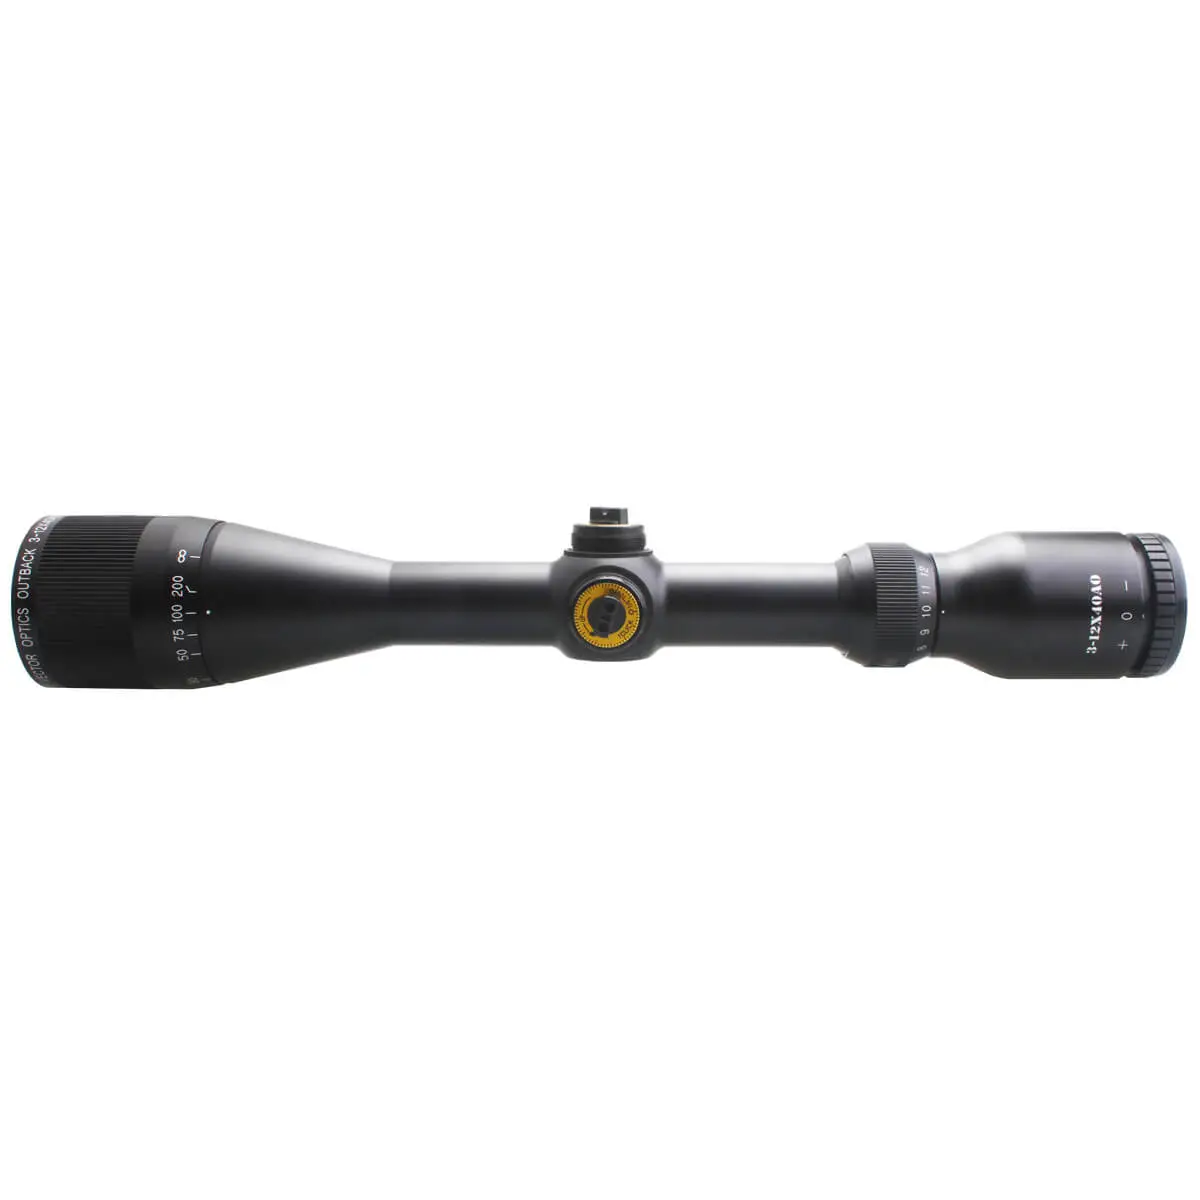 Outback 3-12x40SFP Riflescope